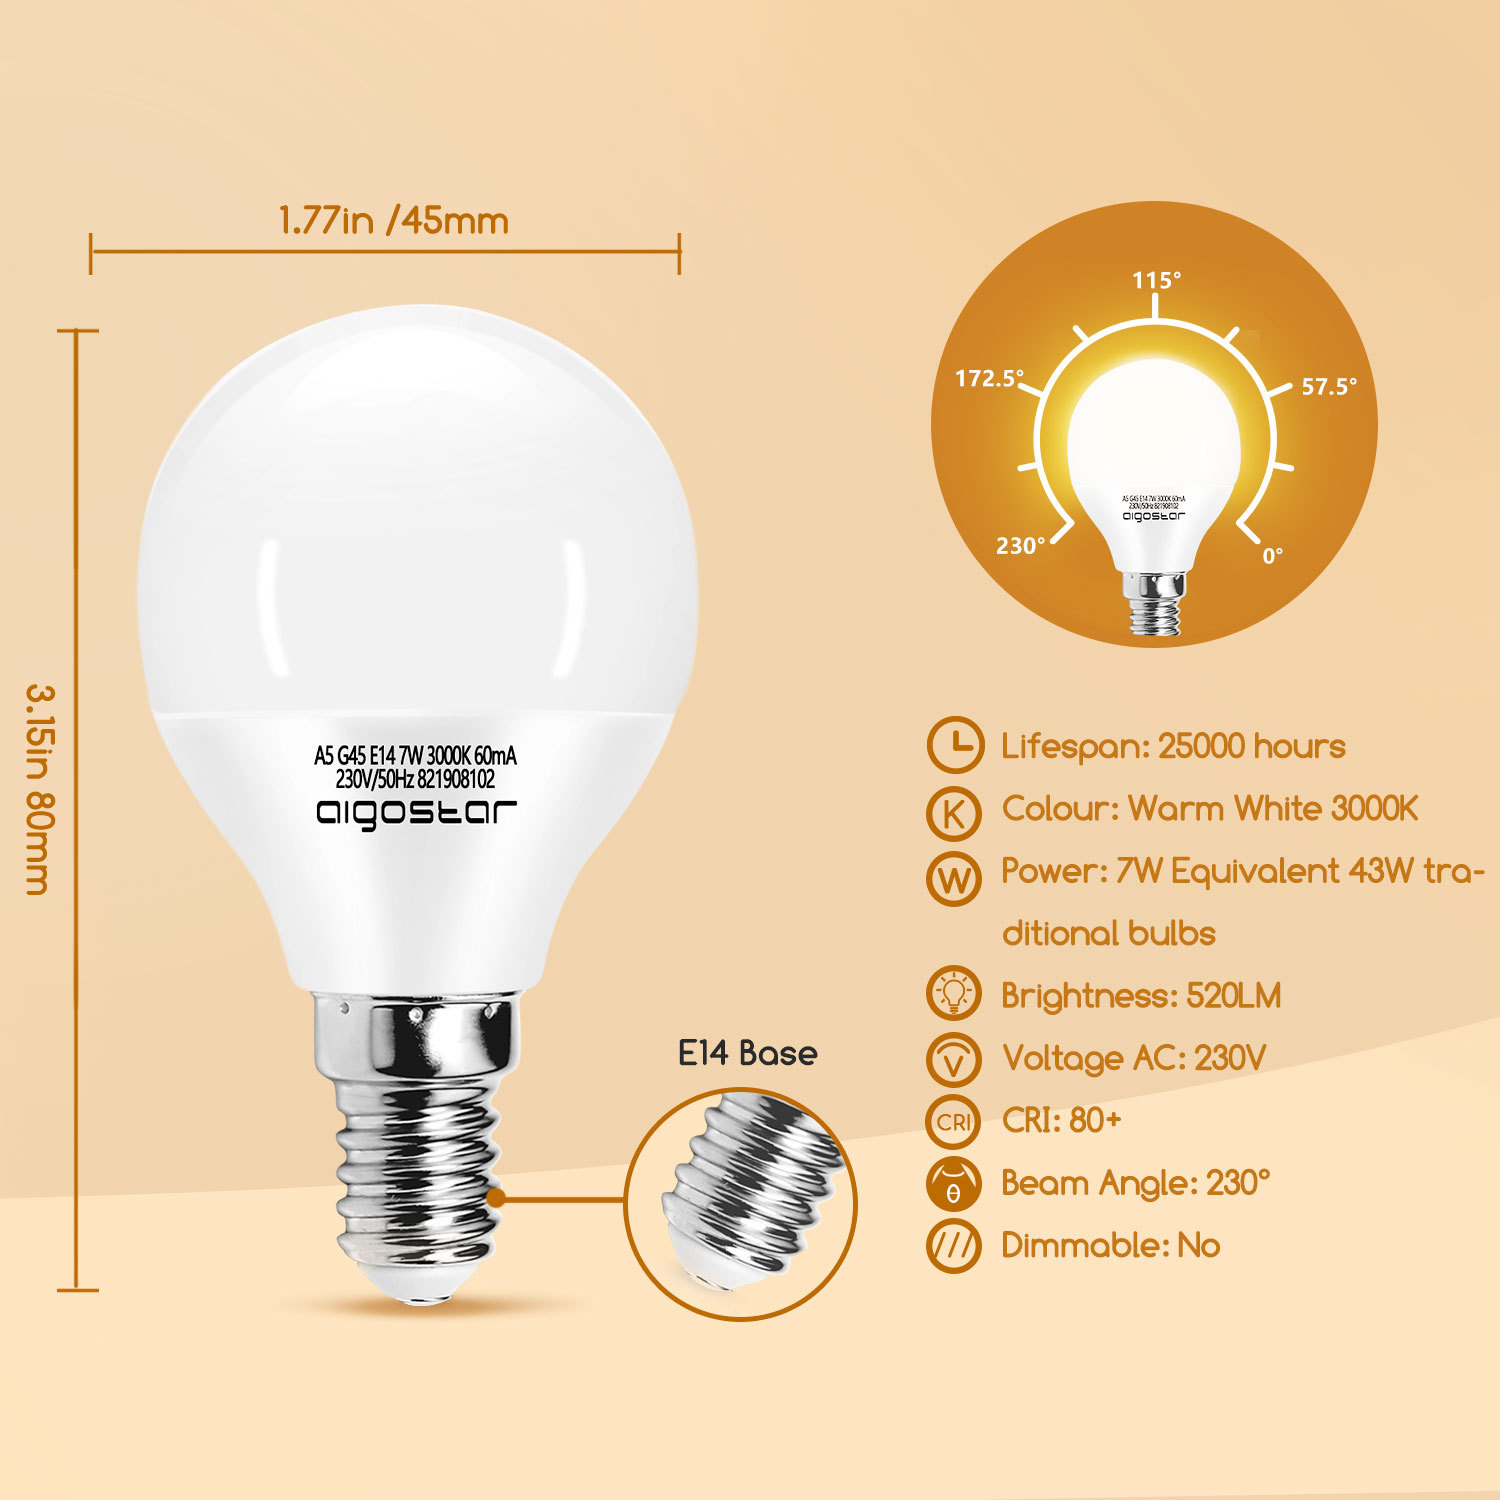 Led E14 Warmweiß 7W Leuchtmittel Lampe Glühbirnen 3000K 520 Lumen Abstrahlwinkel 230 Grad Energiesparend, Multipack mit 5 Lampen